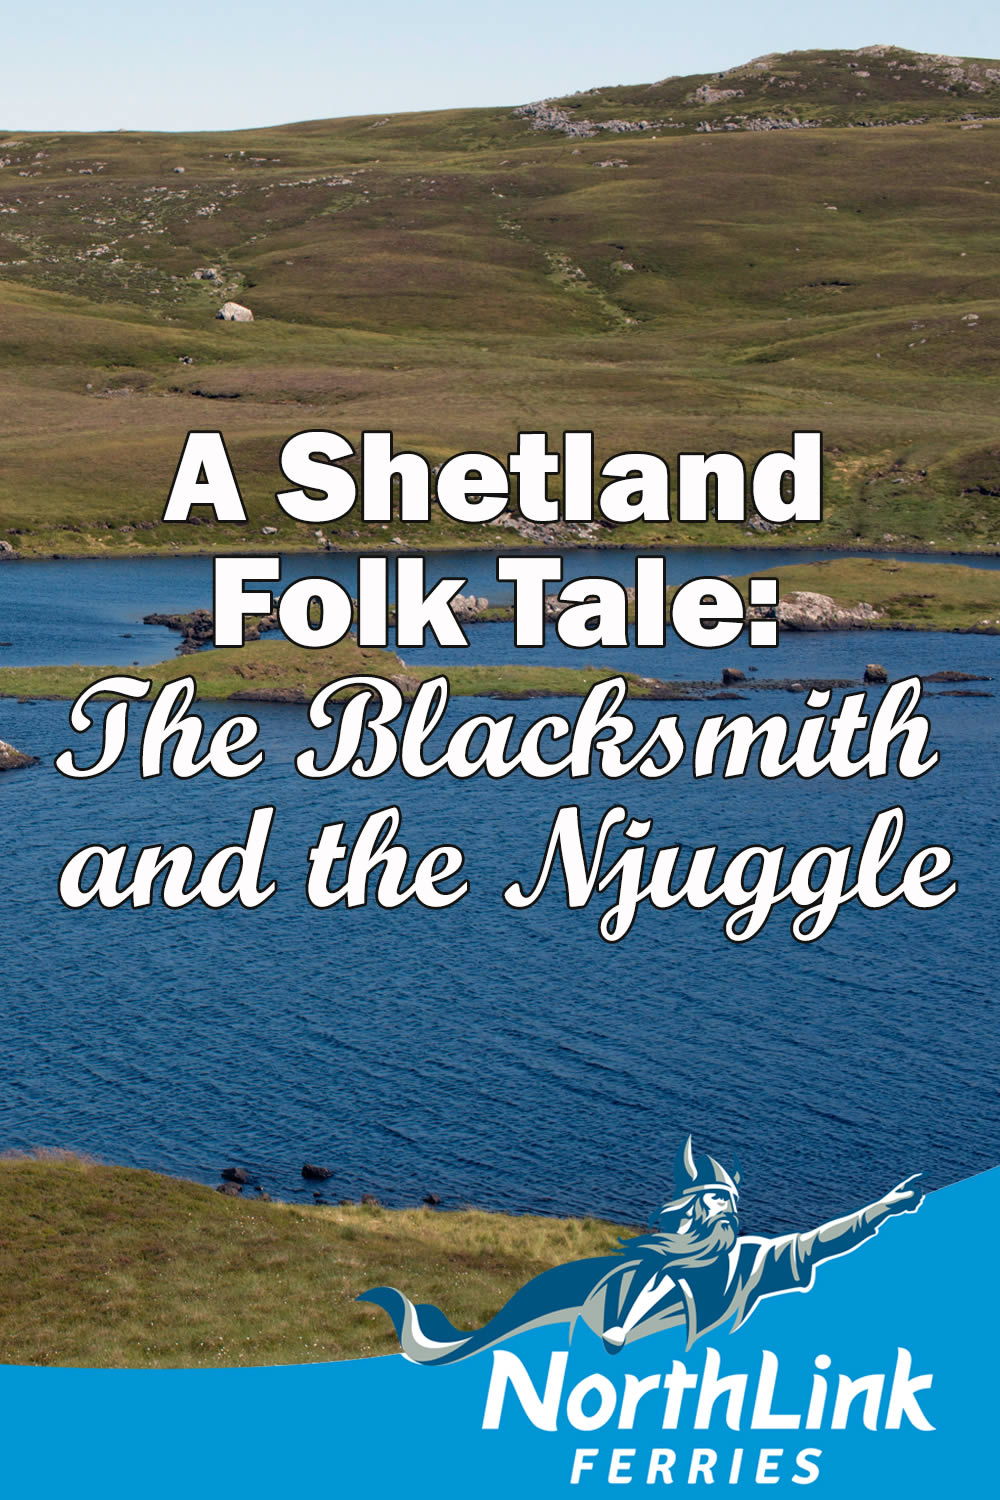 A Shetland Folk Tale: The Blacksmith and the Njuggle